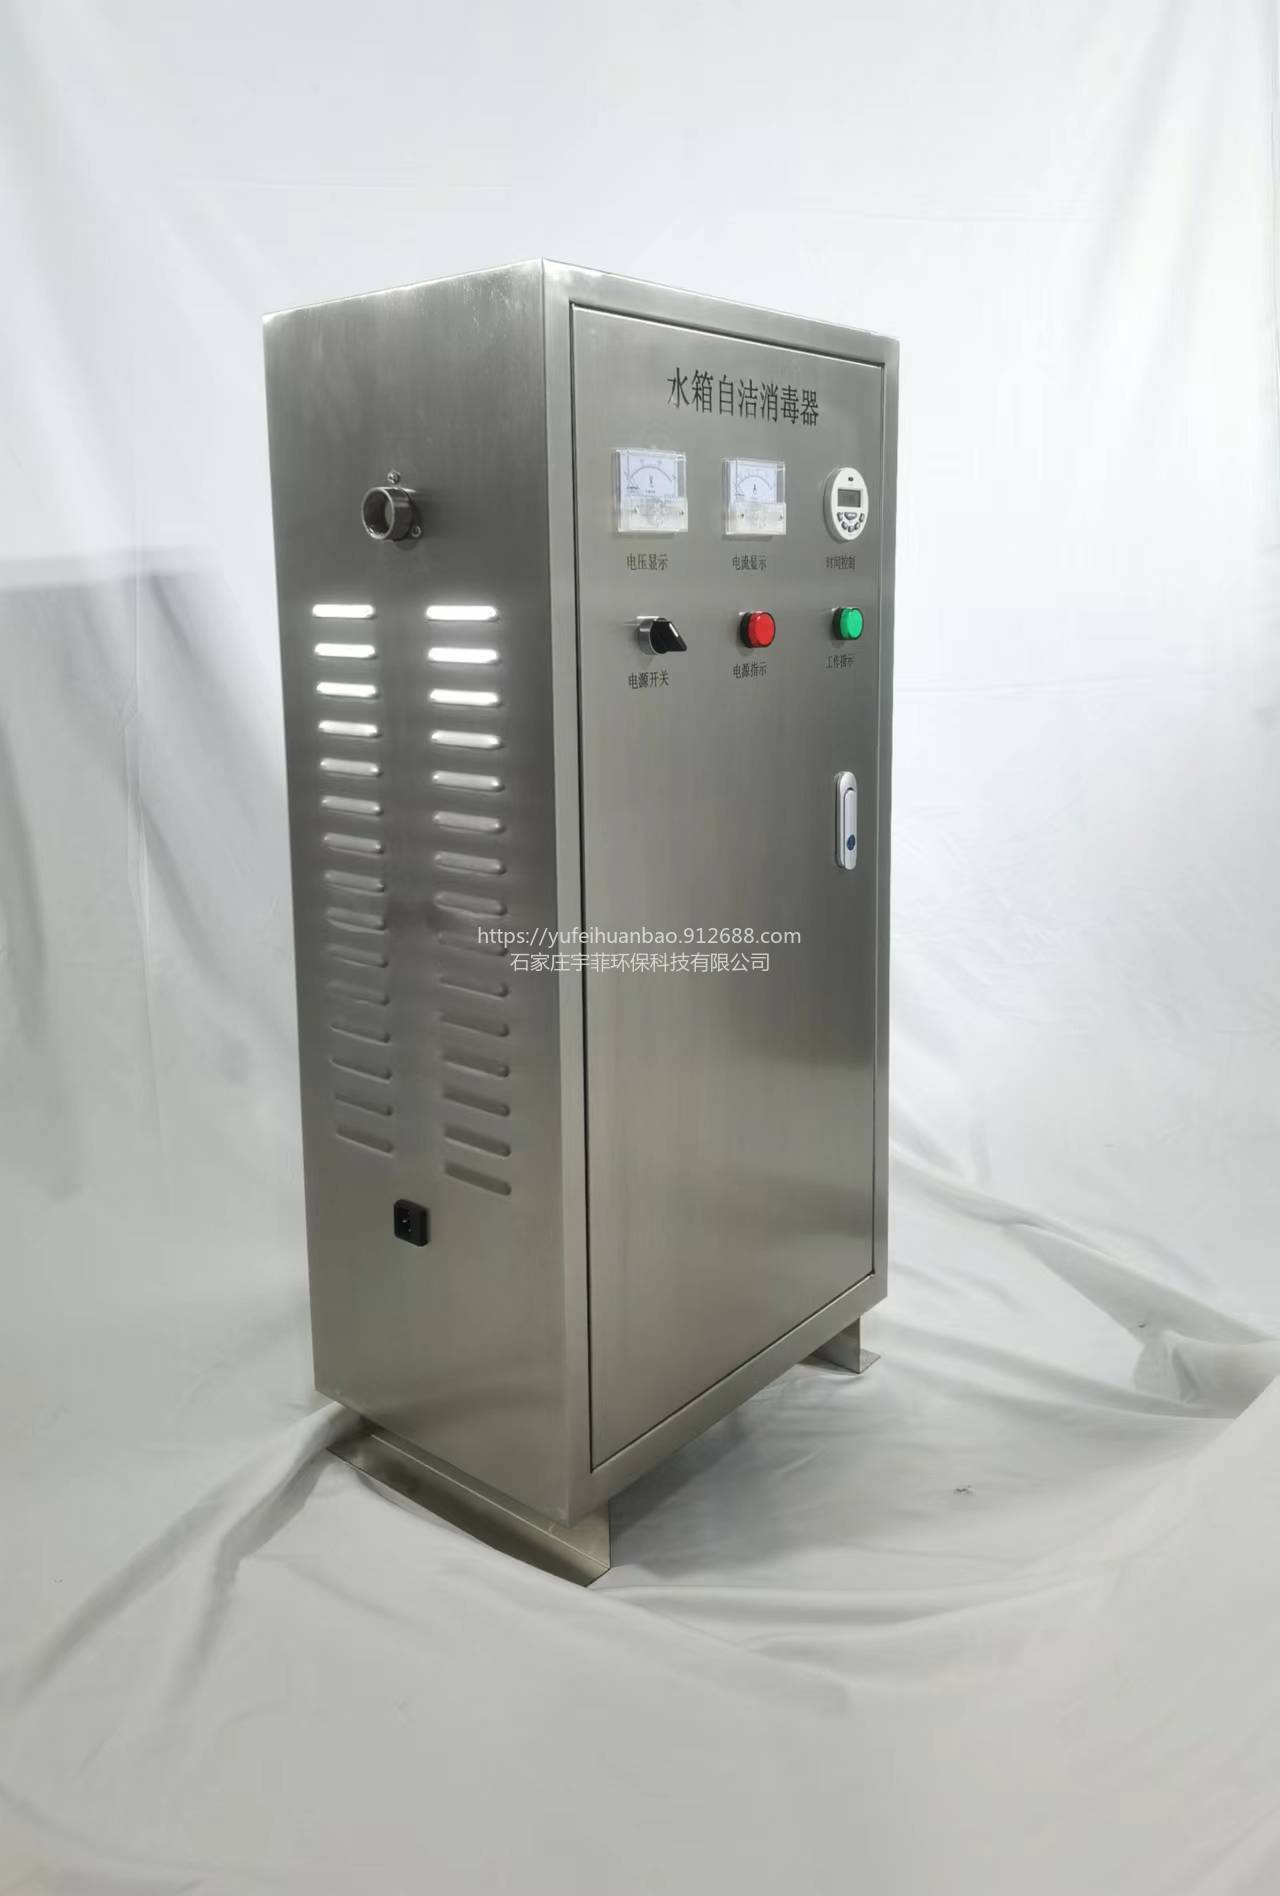 宇菲供应WTS-2A臭氧发生器内置循环泵图片